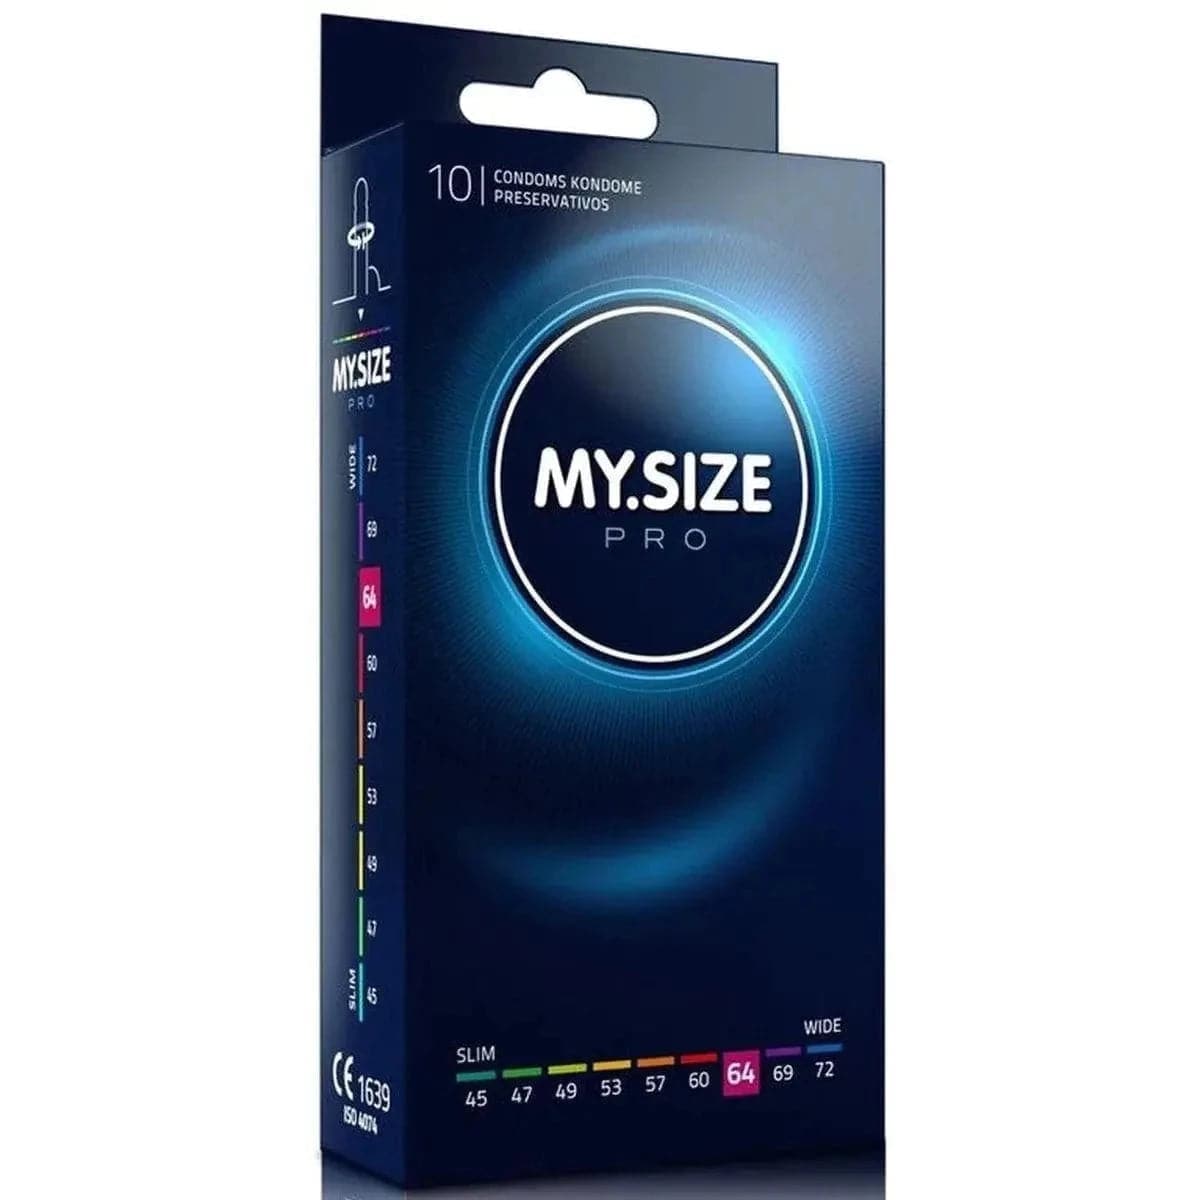 Preservativos XXL - My.Size 64mm - Melhor Ajuste e Sensibilidade  My.Size 10 preservativos  